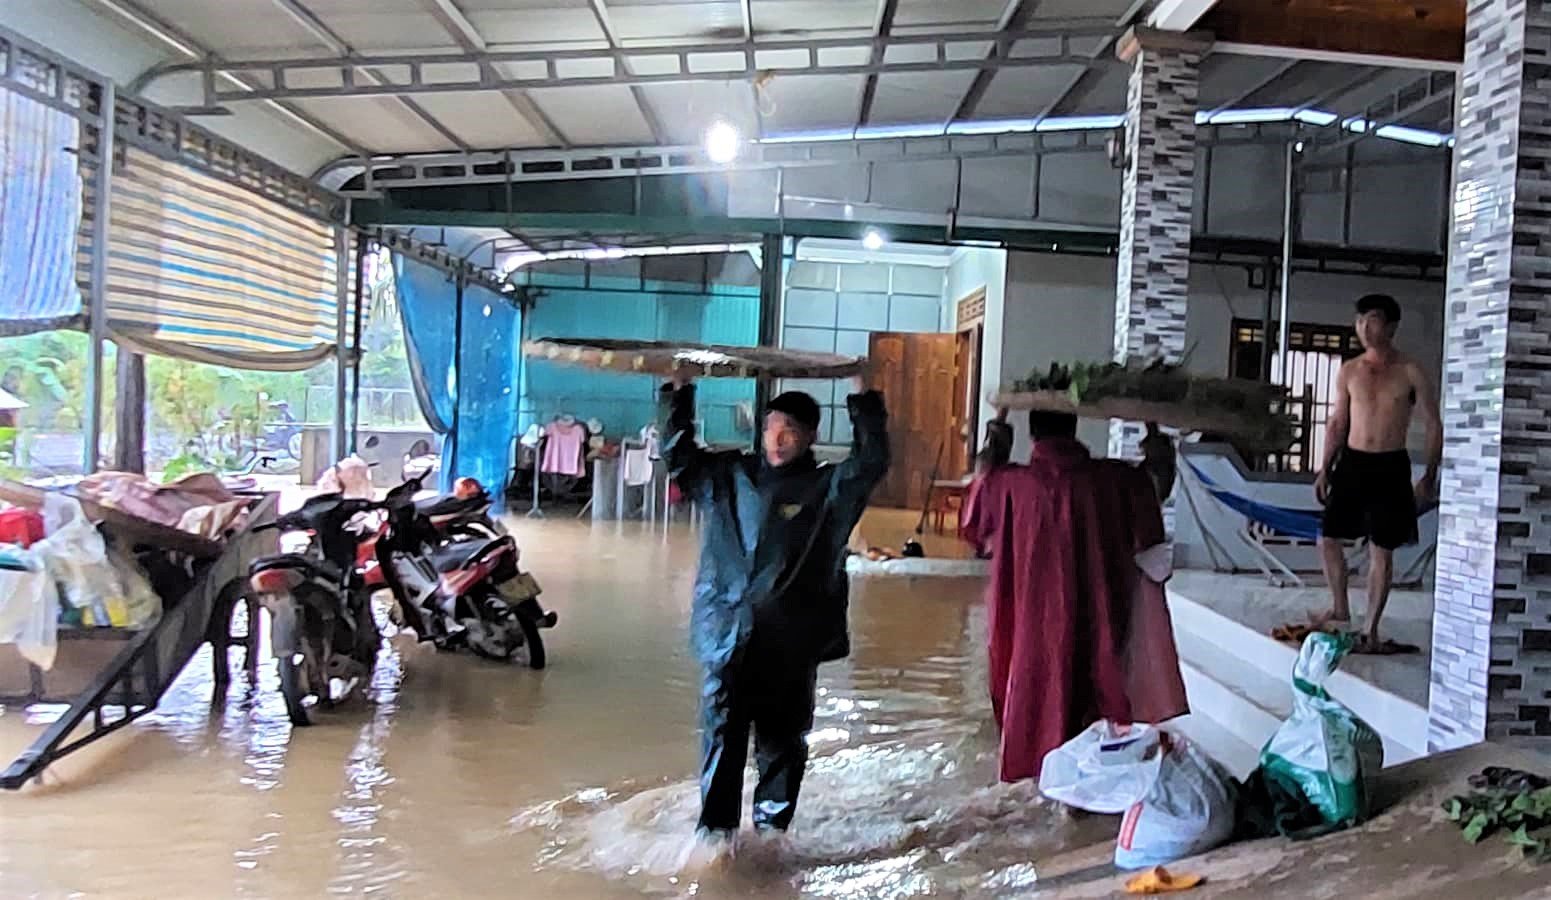 Lâm Đồng: Mưa lớn kéo dài gây ngập cục bộ nhiều thôn, dâu tằm, ao cá trôi theo dòng nước - Ảnh 6.